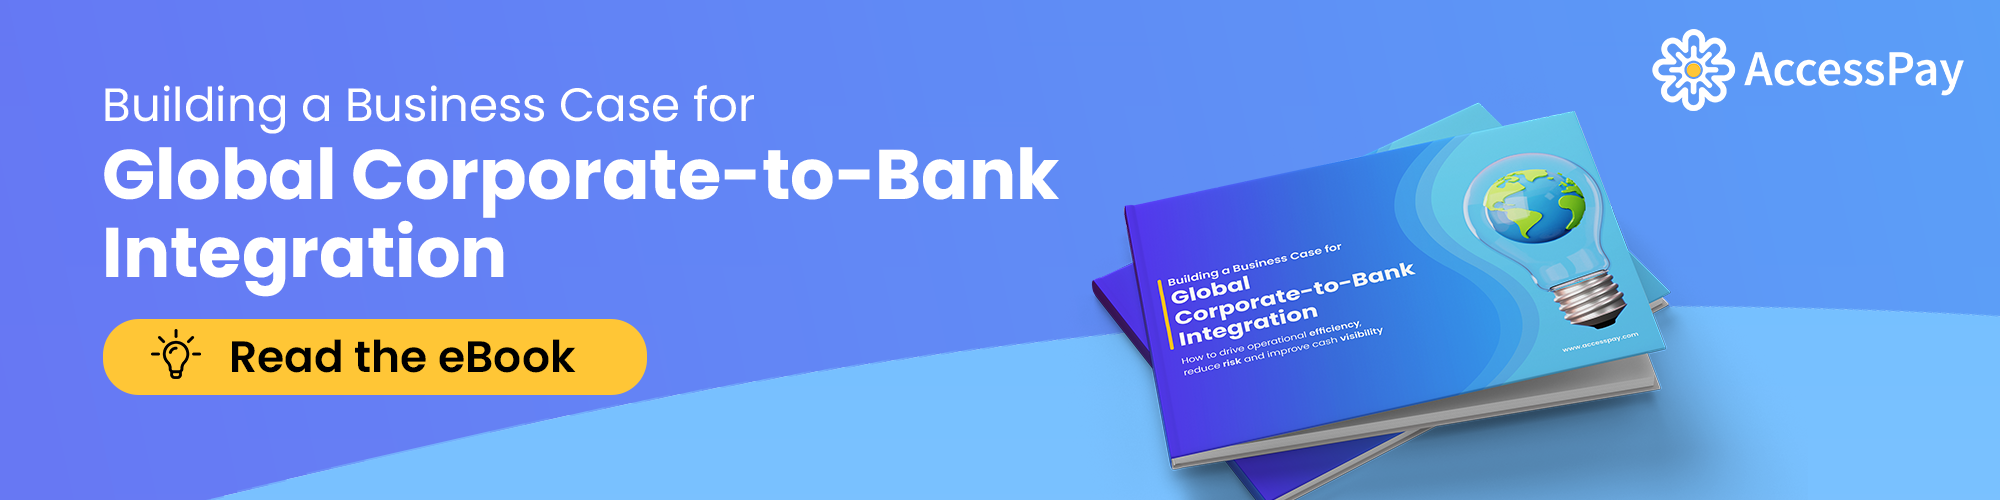 corporate-to-bank-integratie-ebook-cta-banner